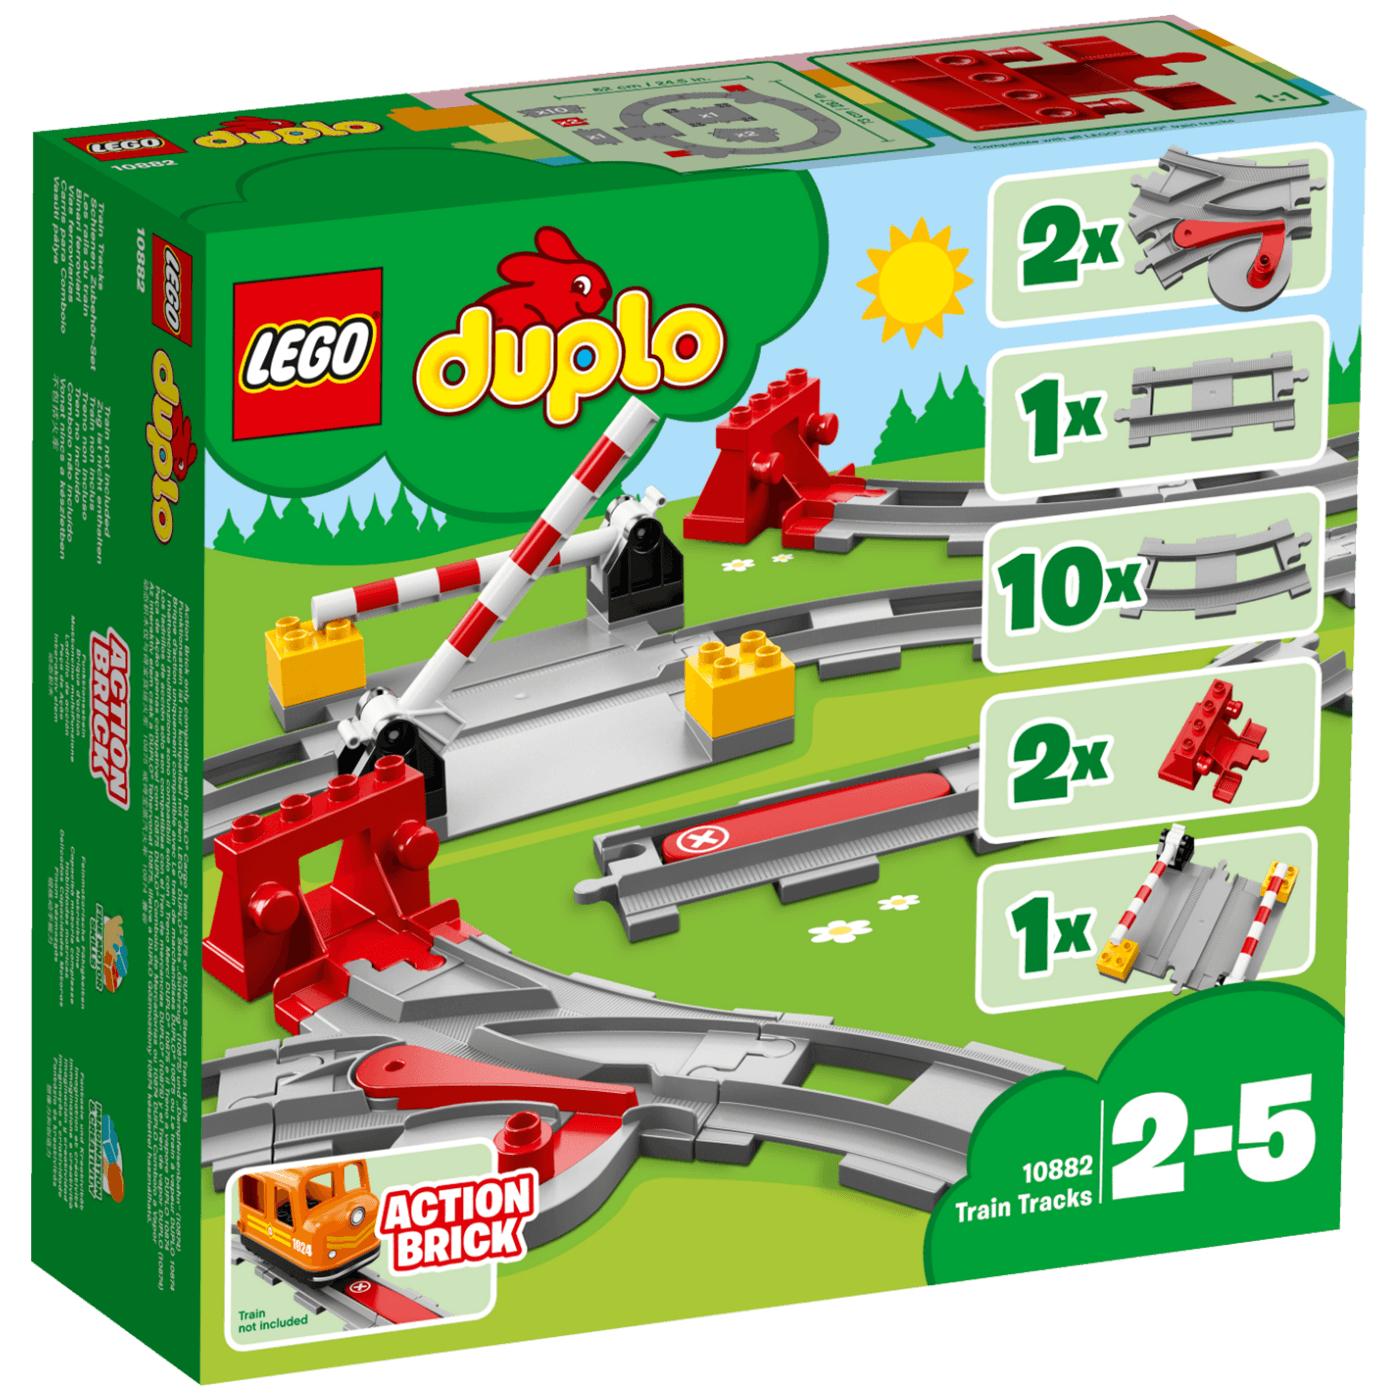  Željezničke šine, LEGO Duplo